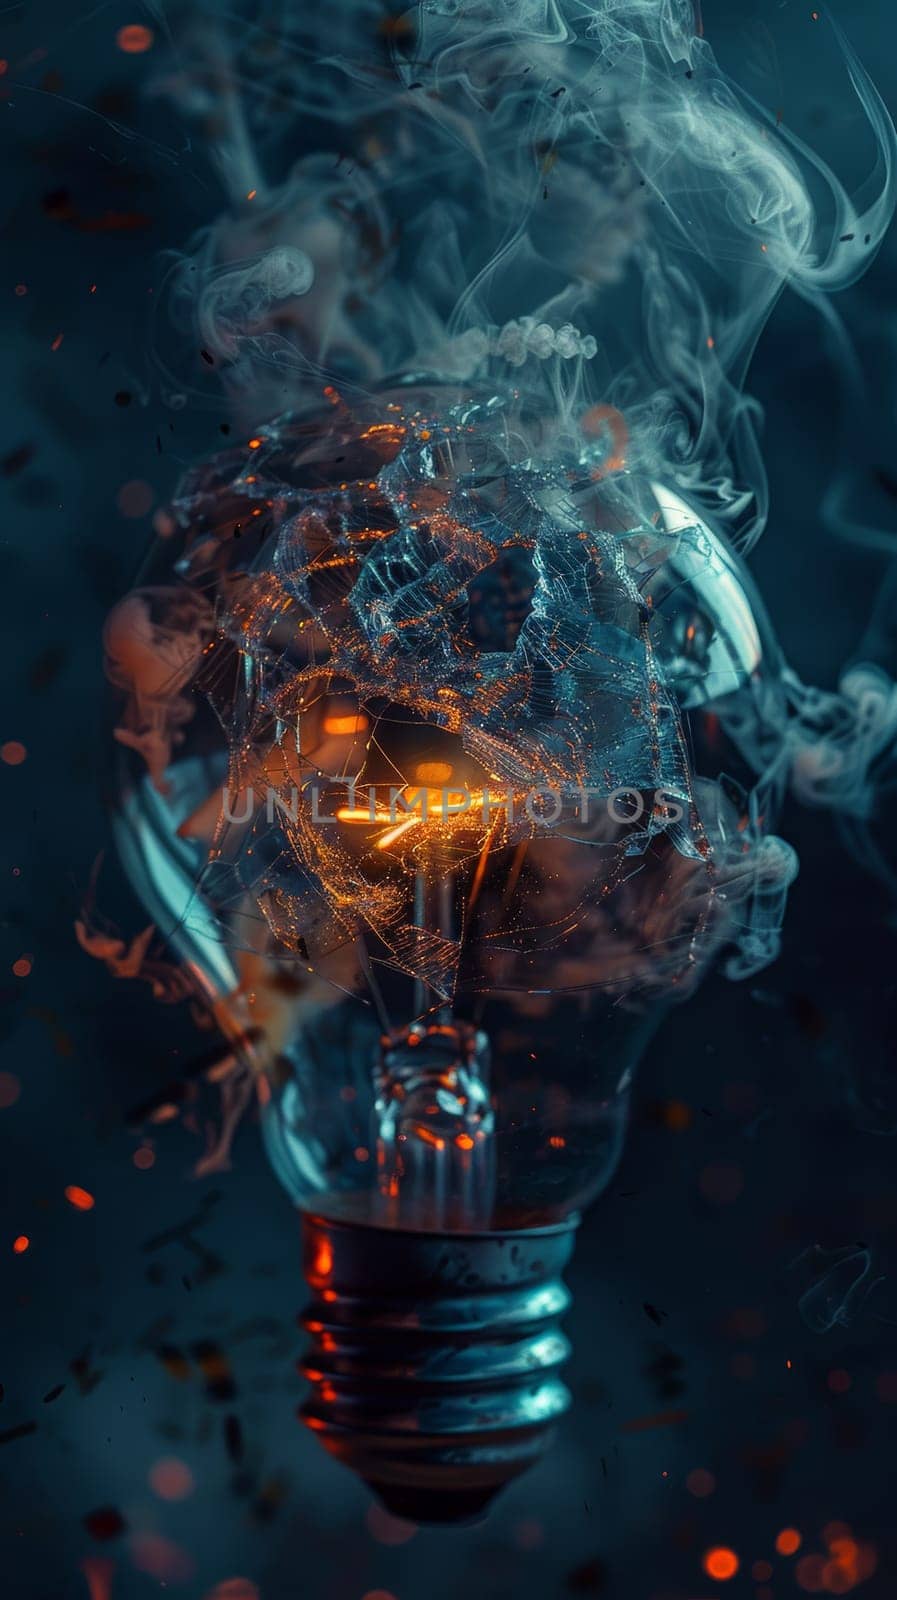 Shattered Light Bulb with Smoke by Anastasiia